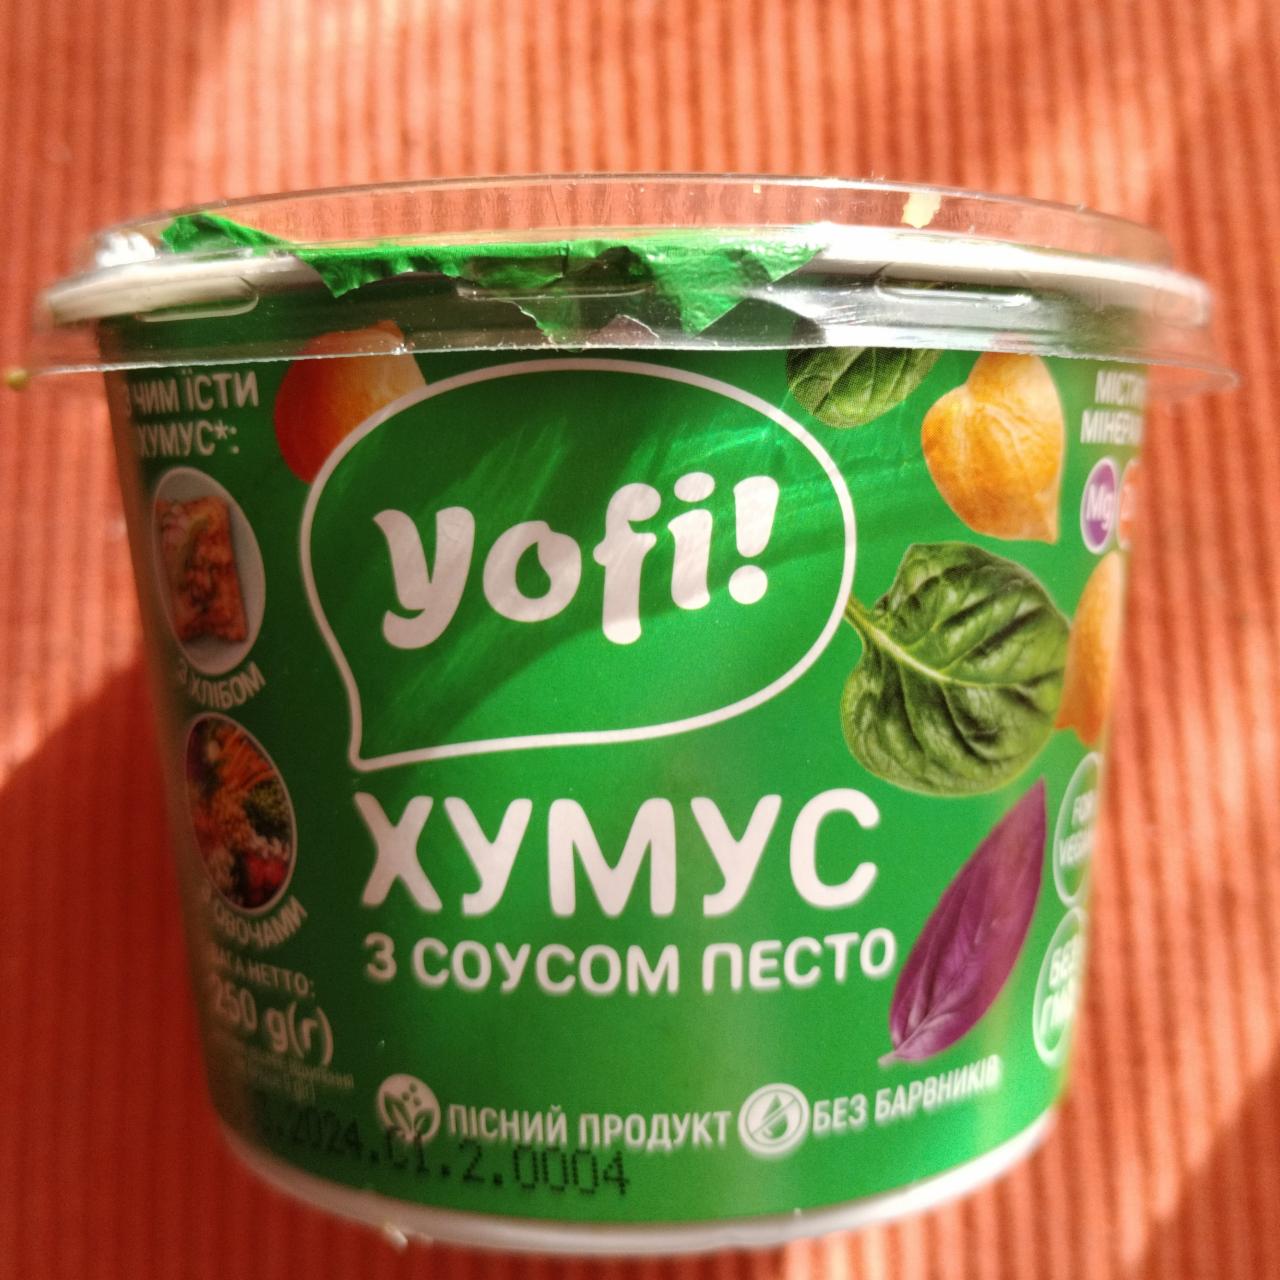 Фото - хумус с соусом песто Yofi!